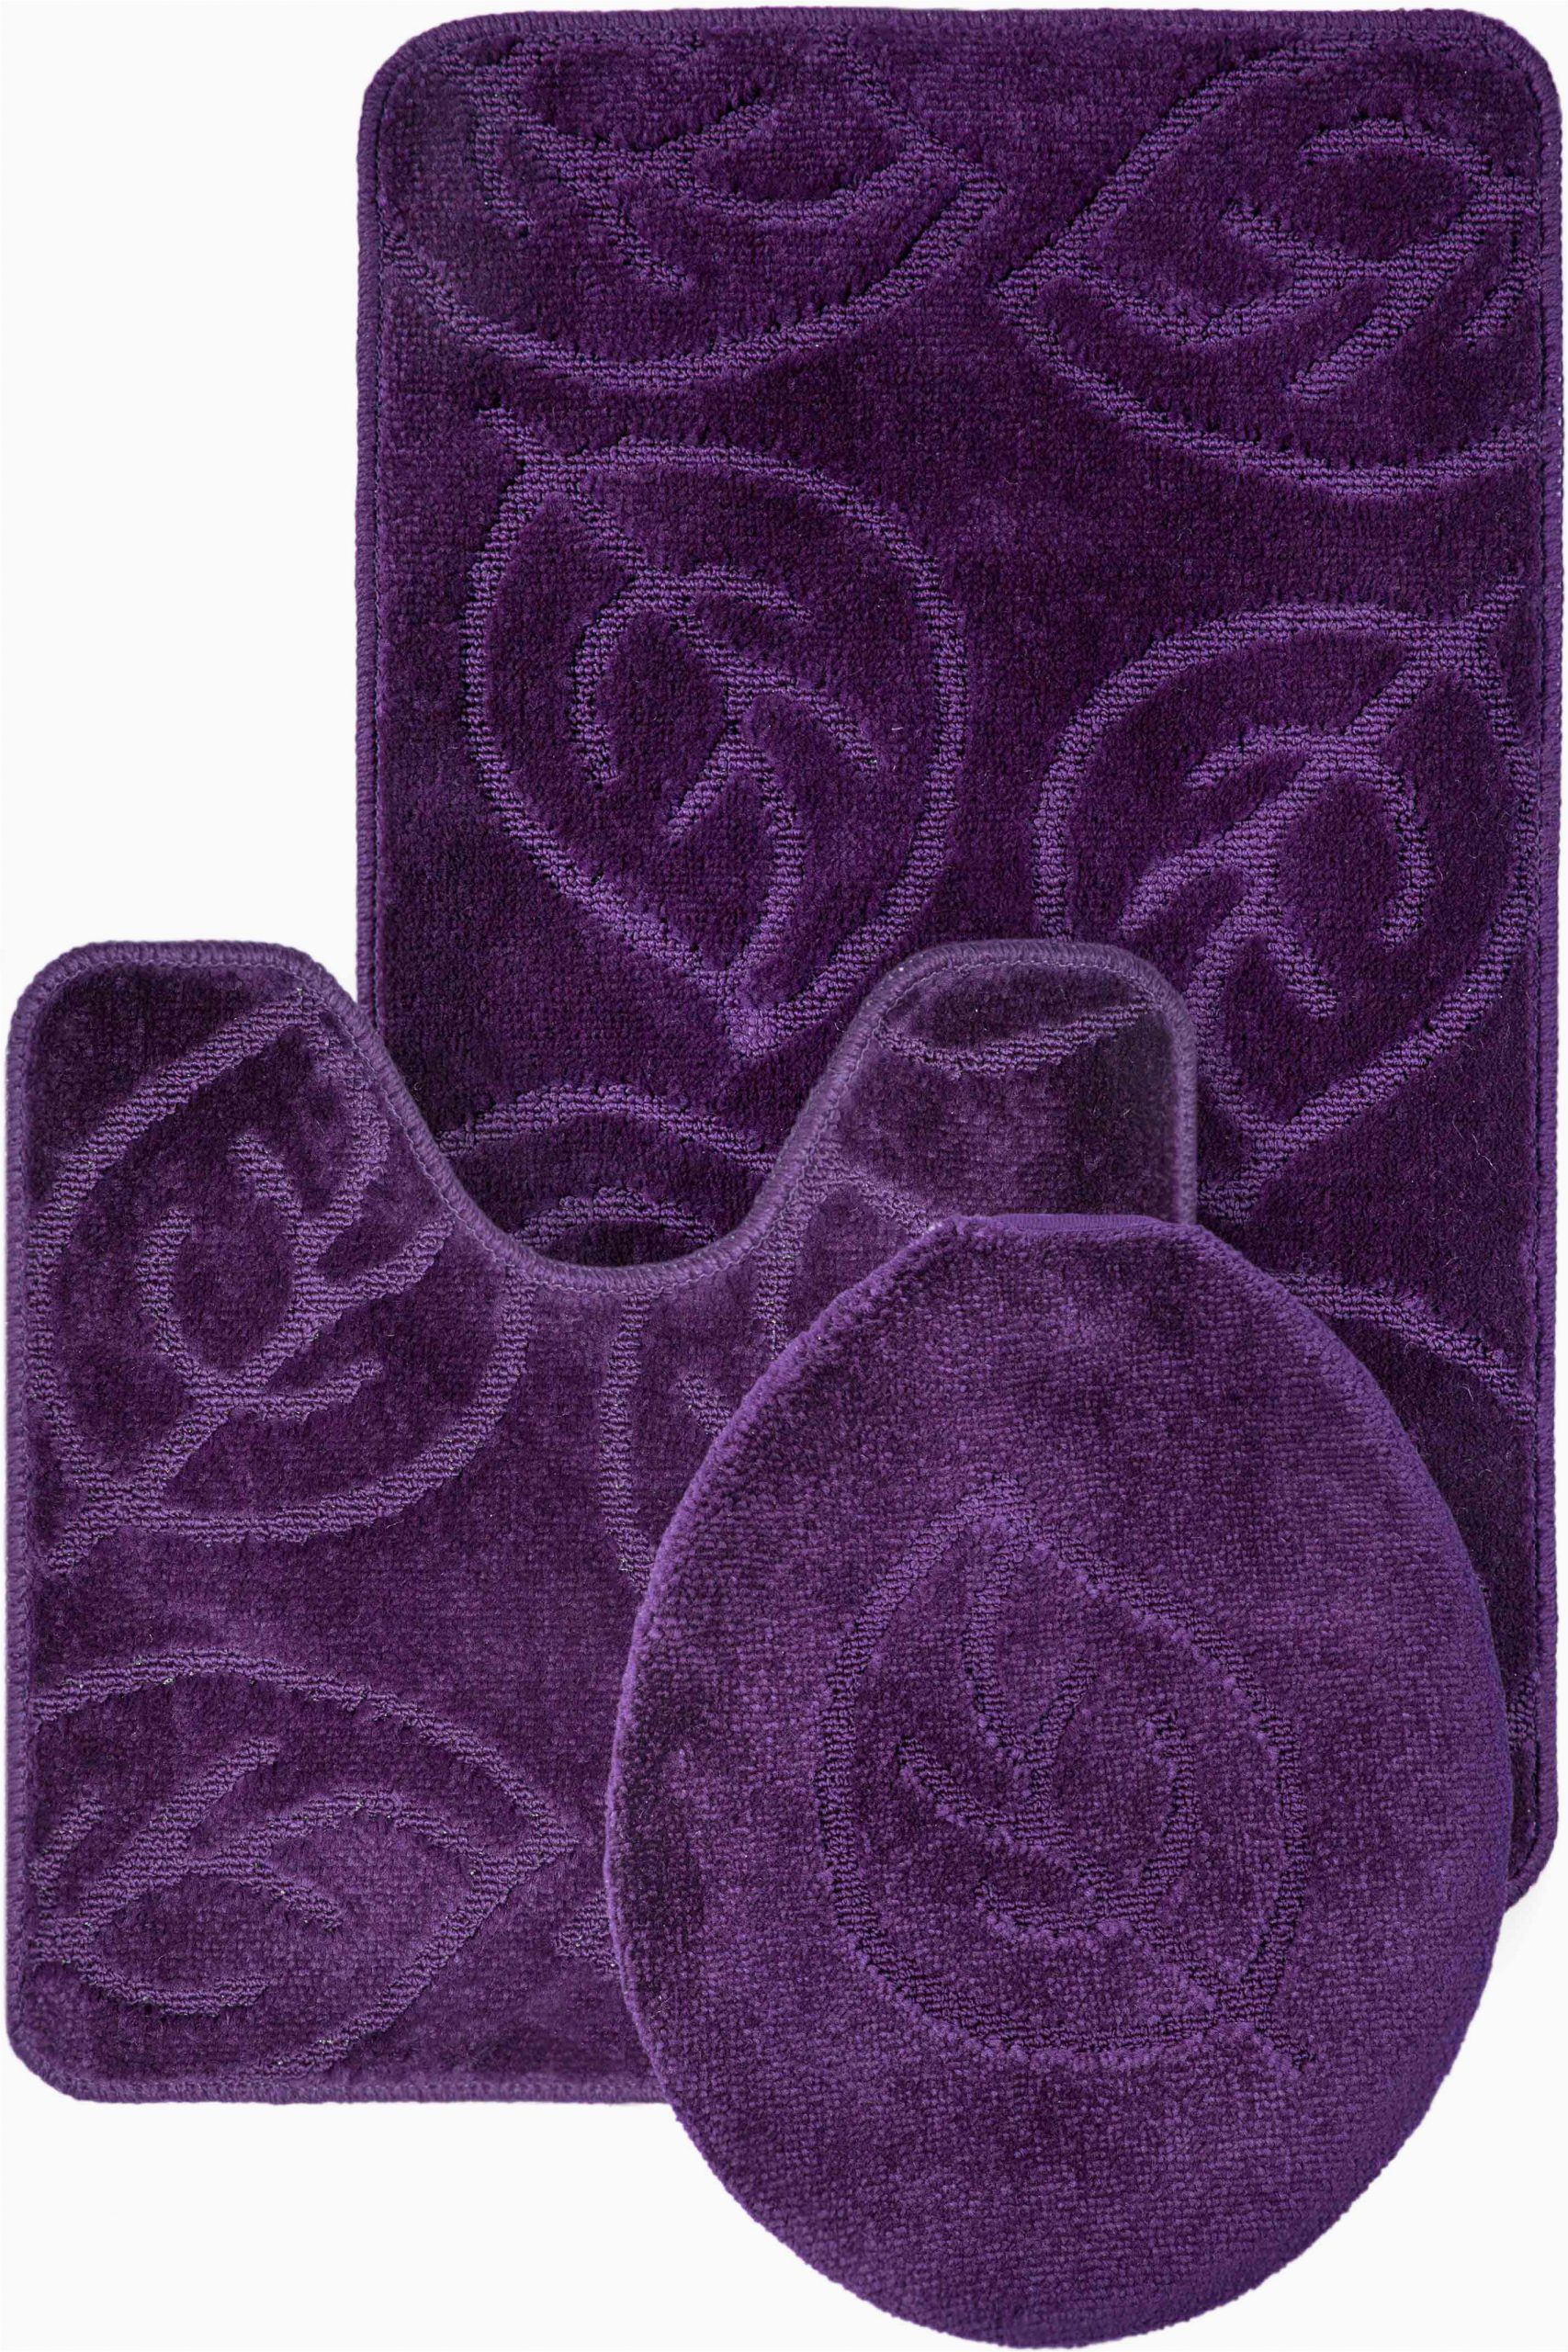 3 piece purple leaf bath rug set lavender bath rugs shower curtains world market memory foam rugs bathroom rugs walmart pottery barn rugs bath rugs tar foam bath mat shag bathroom rugs shag bath ru